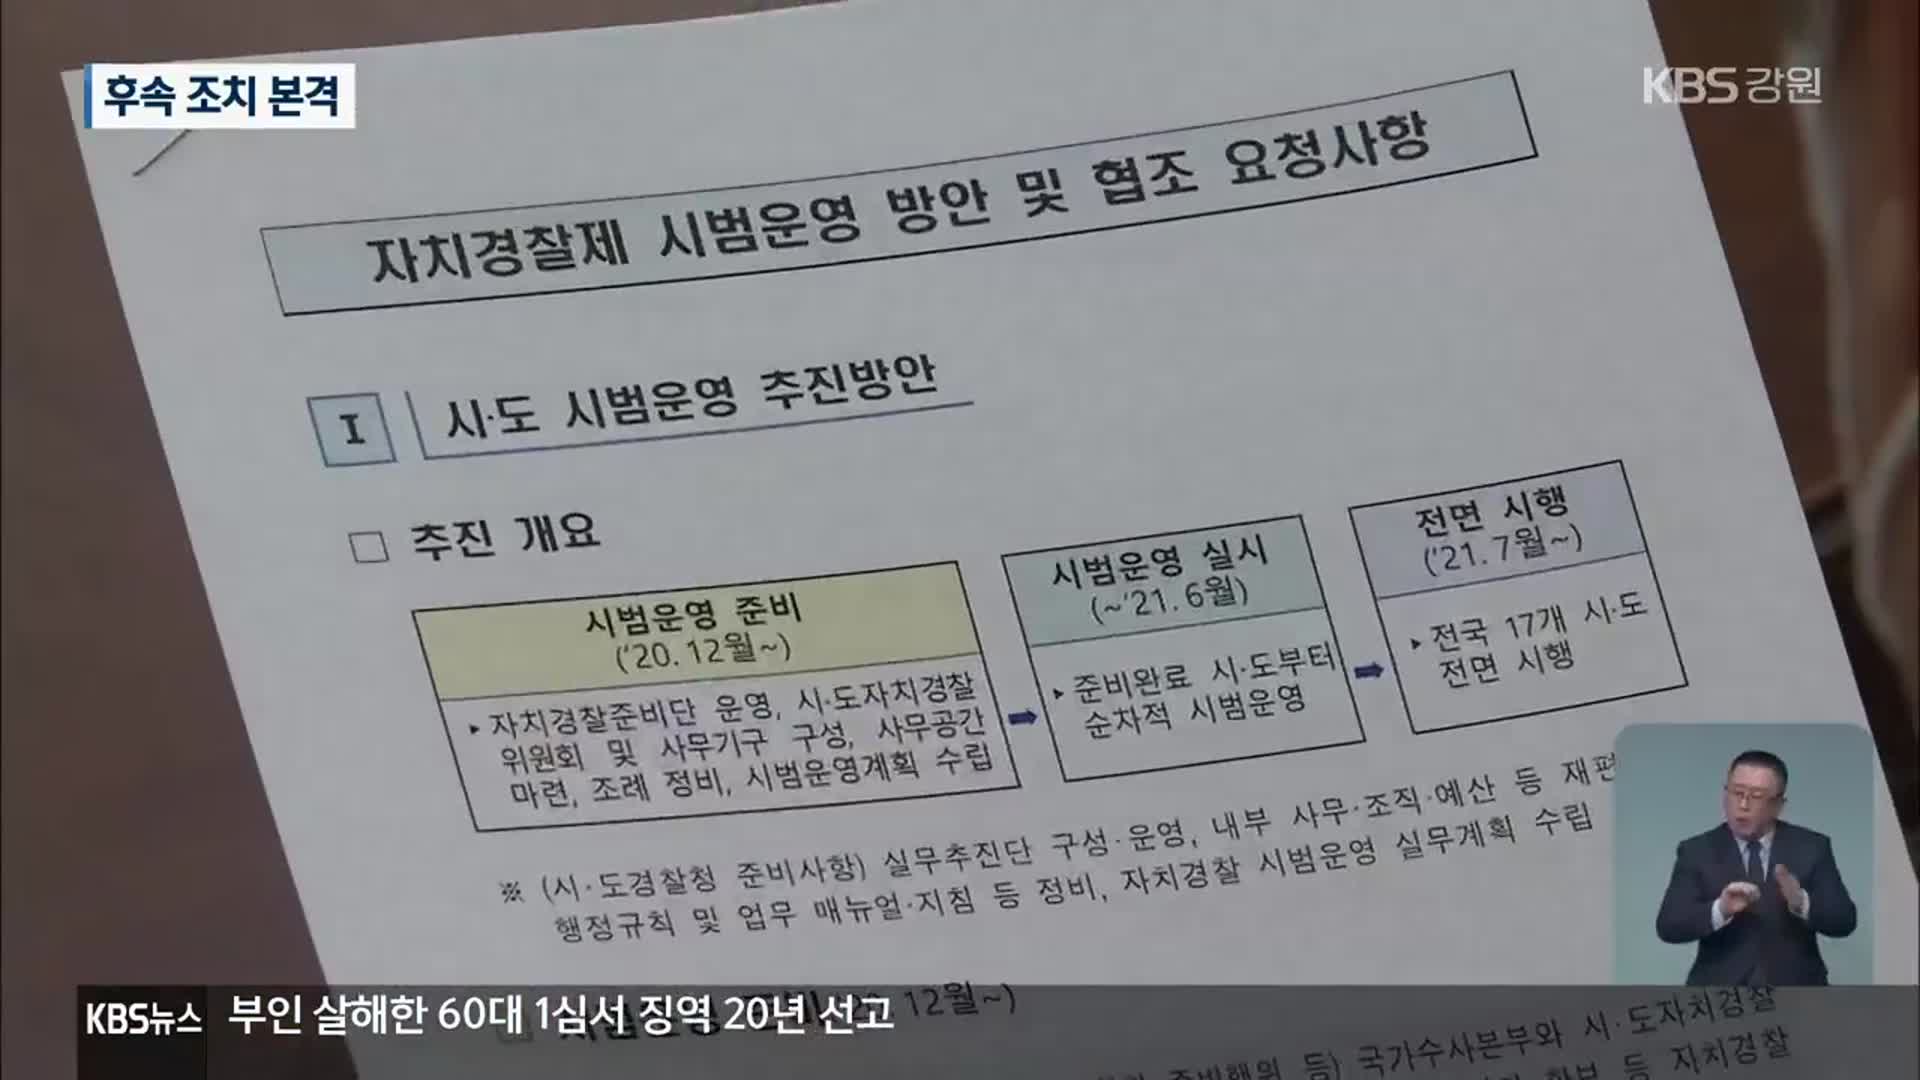 ‘의회 자치권 확대와 자치경찰제 도입’ 후속 조치 본격